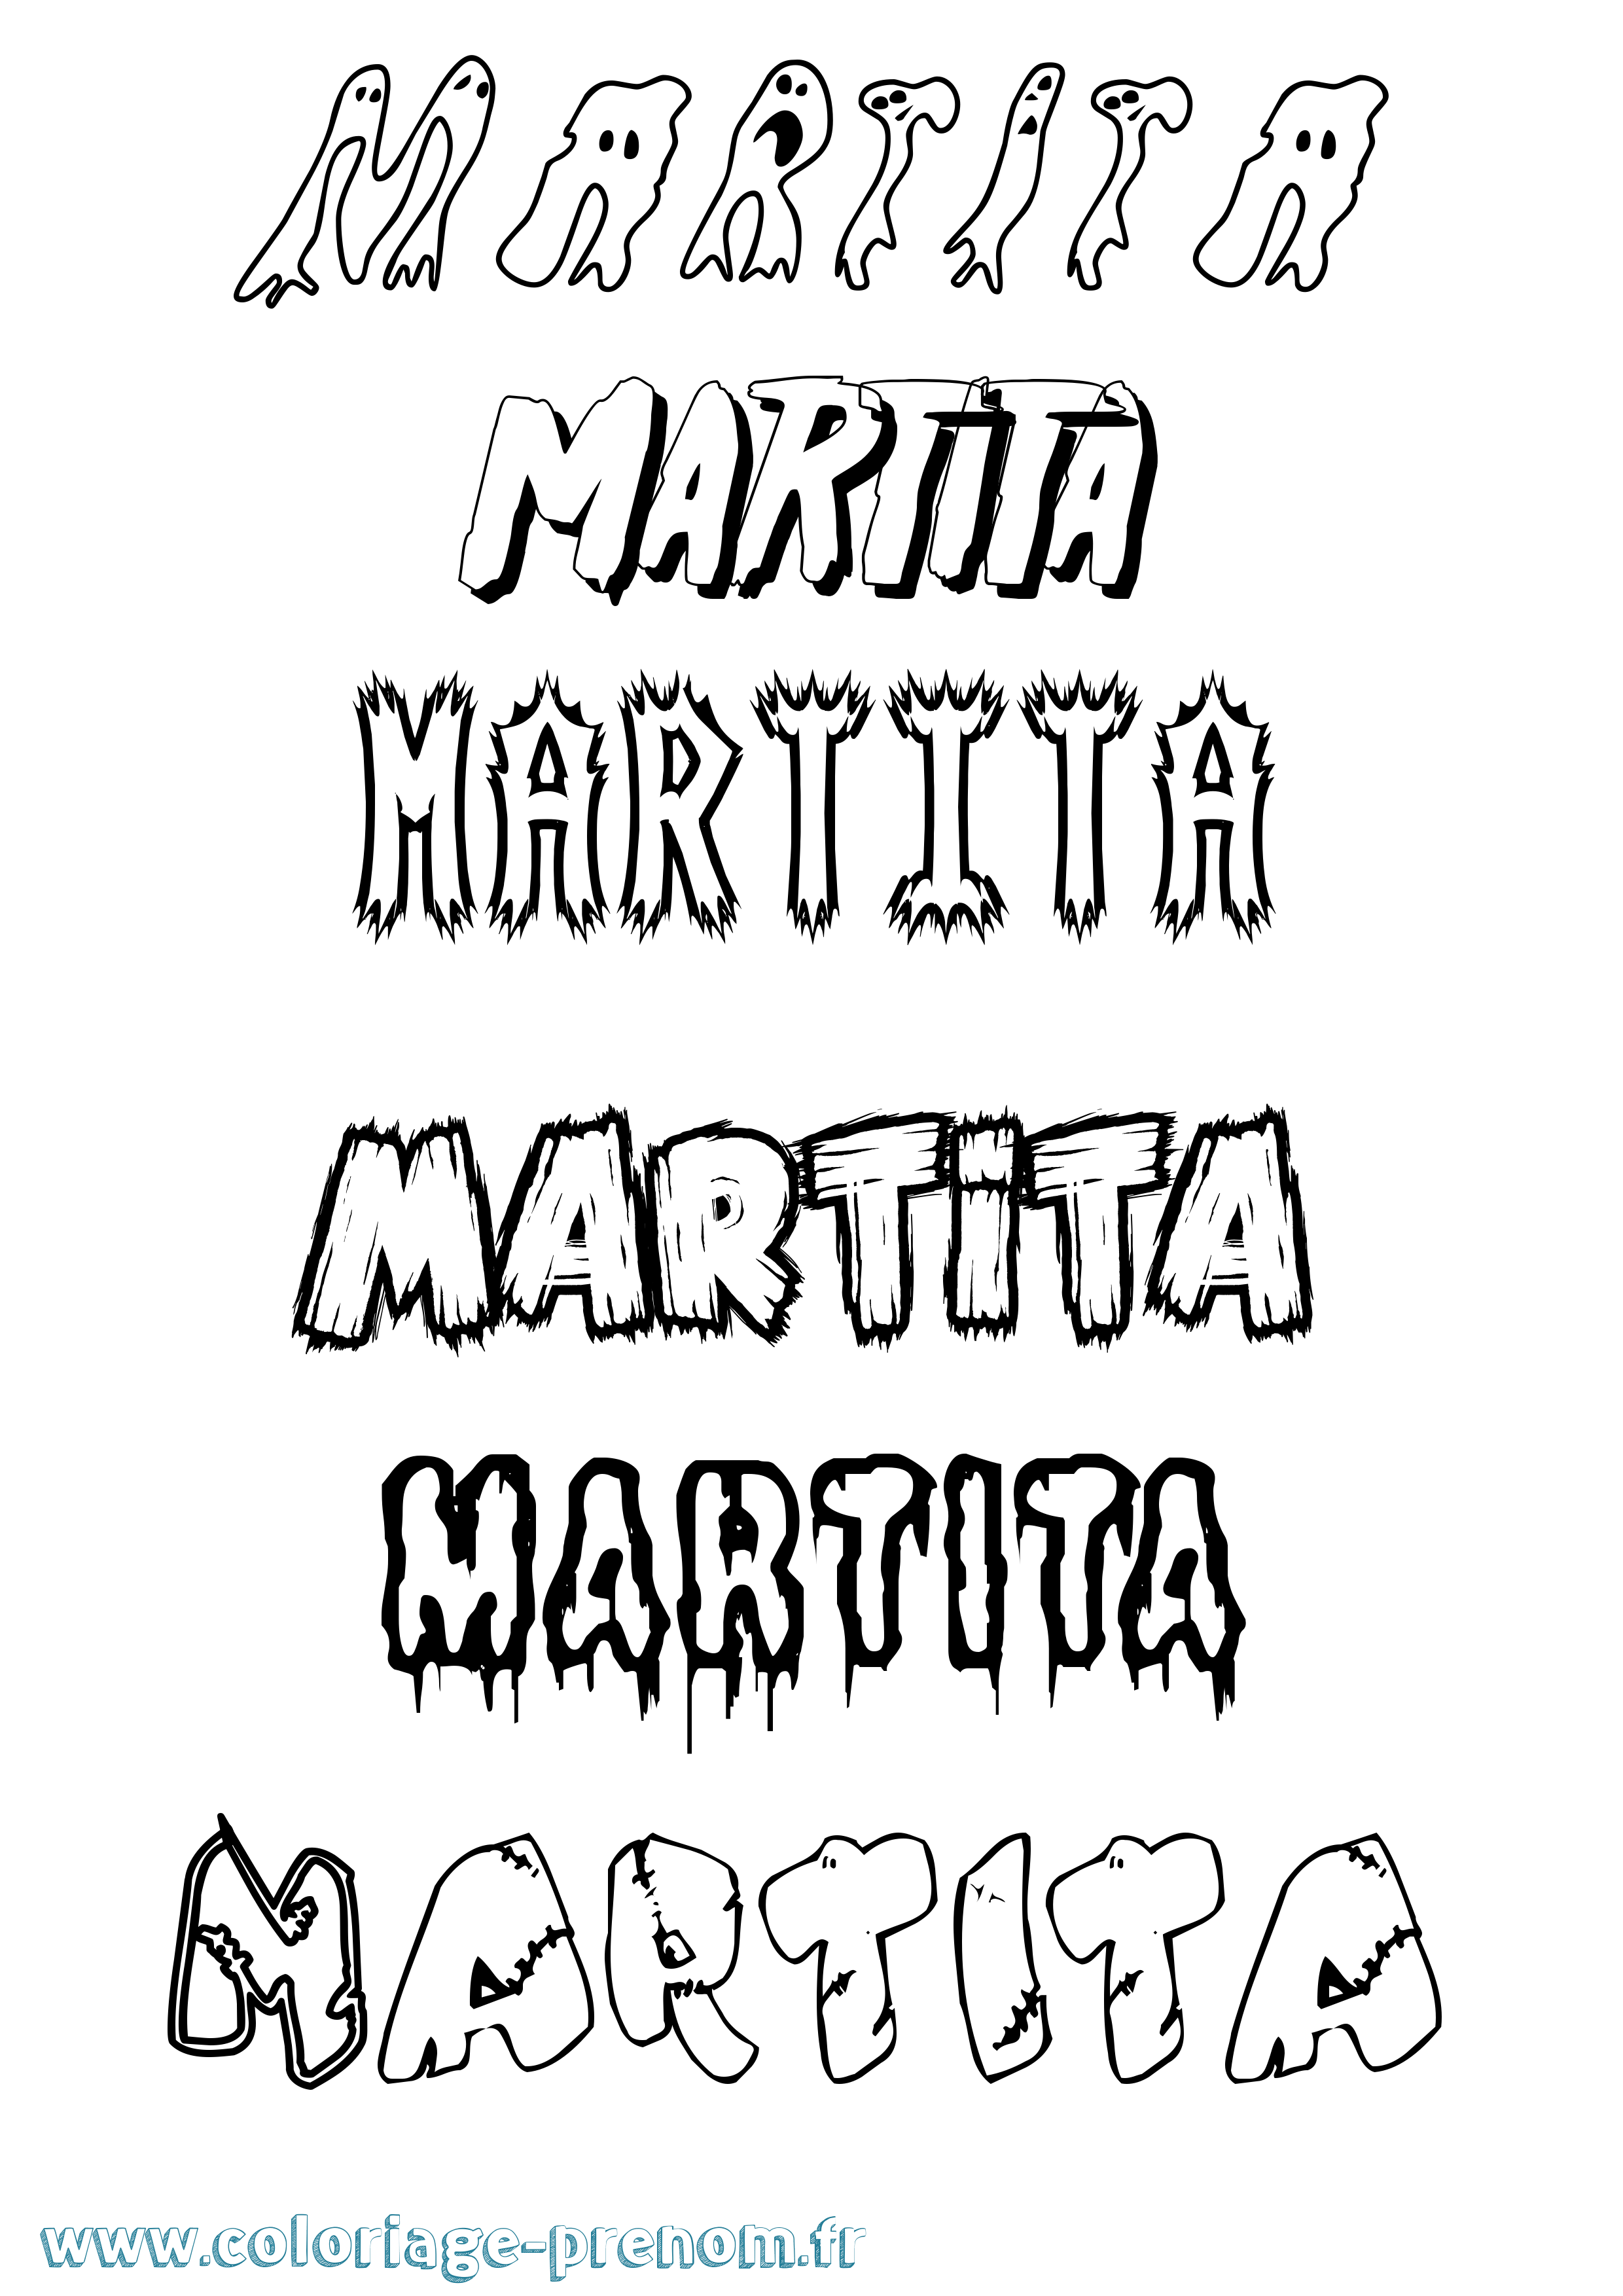 Coloriage prénom Martita Frisson